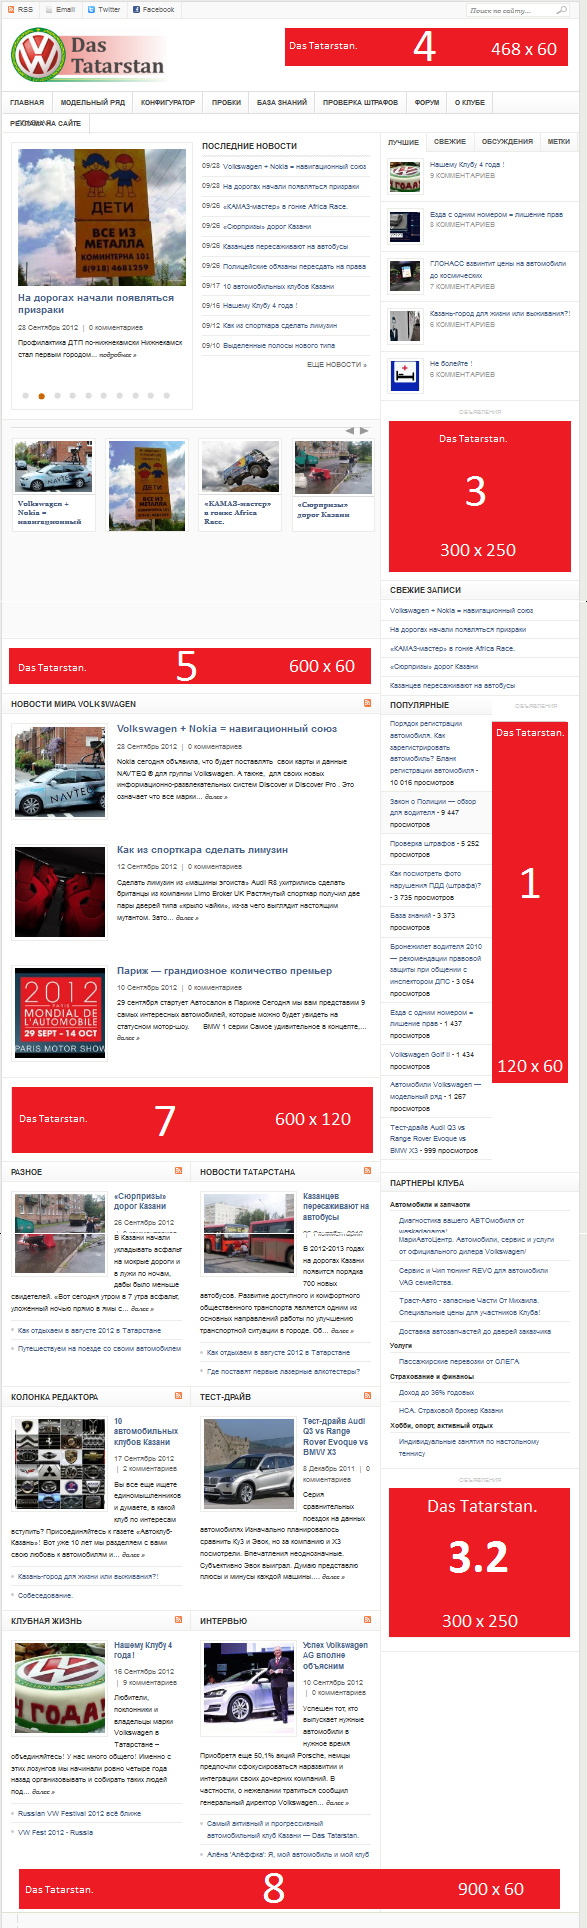 Реклама на сайте. Скриншот Главной страницы Das Tatarstan.